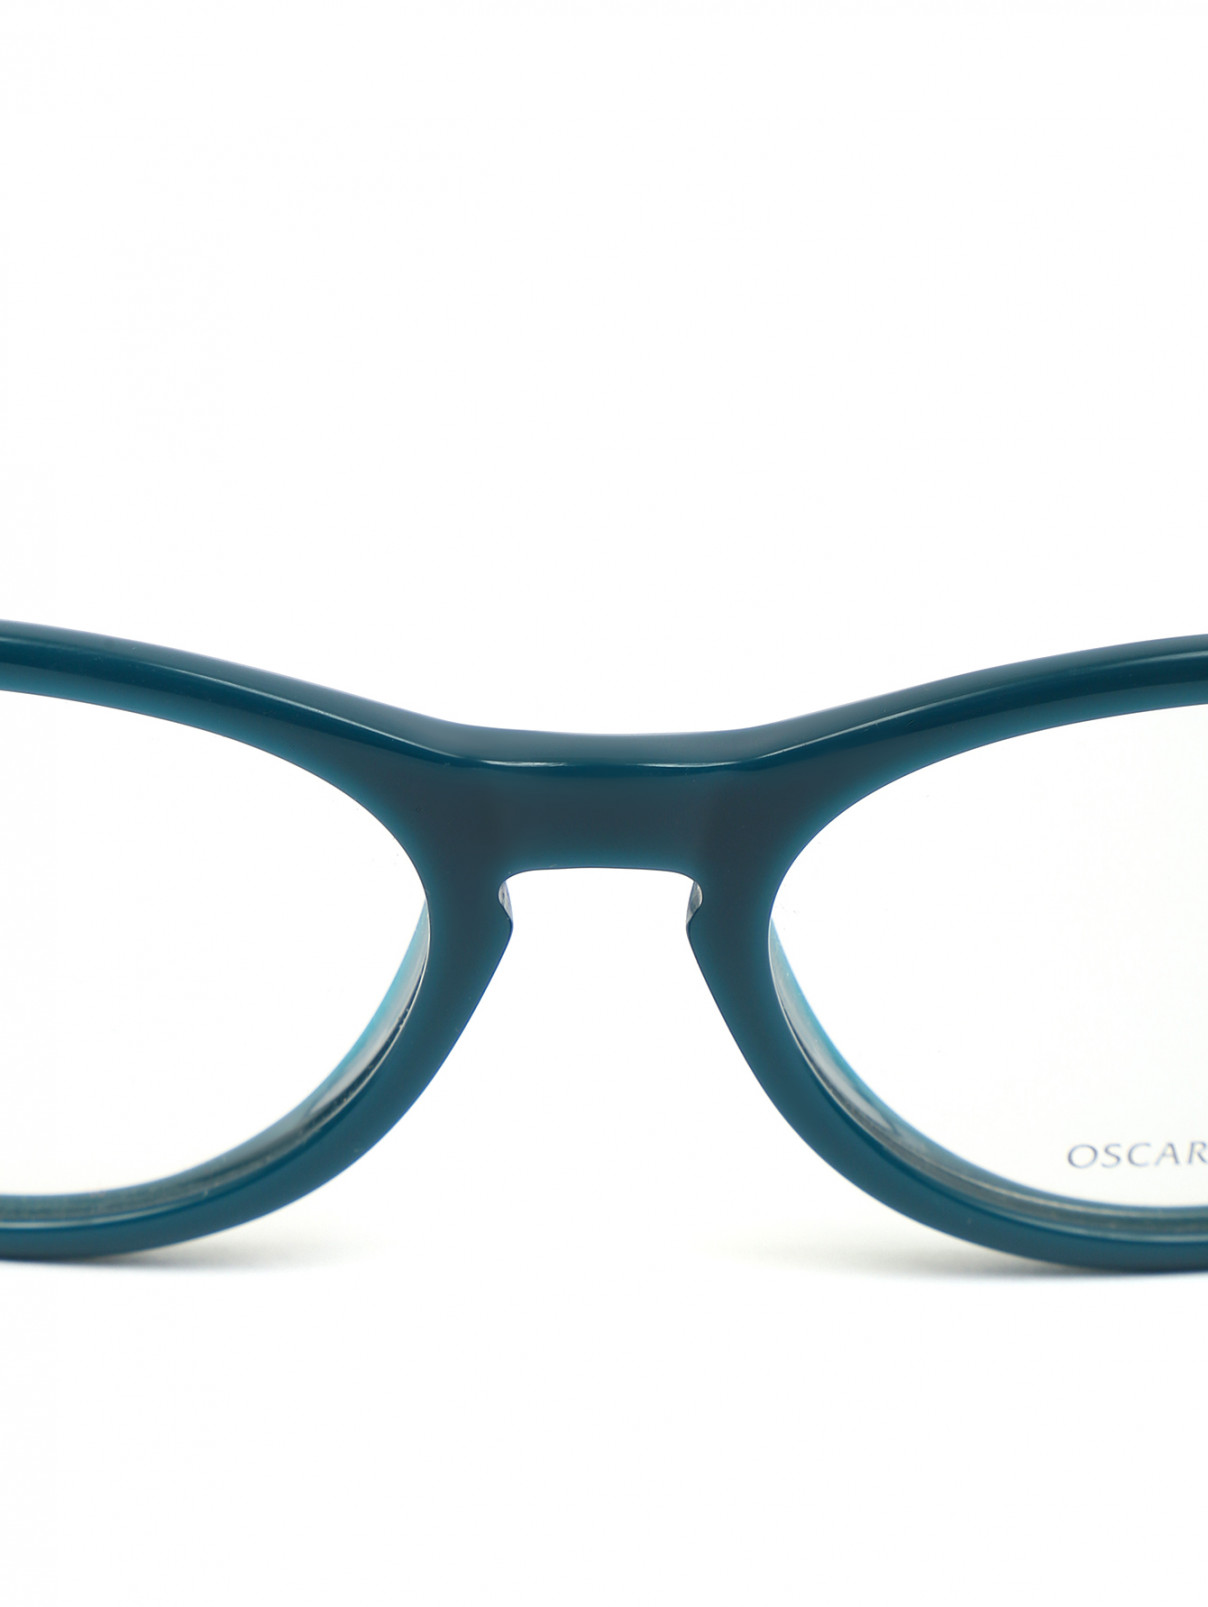 Оправа с прозрачными стеклами Oscar Magnuson  –  Деталь1  – Цвет:  Синий